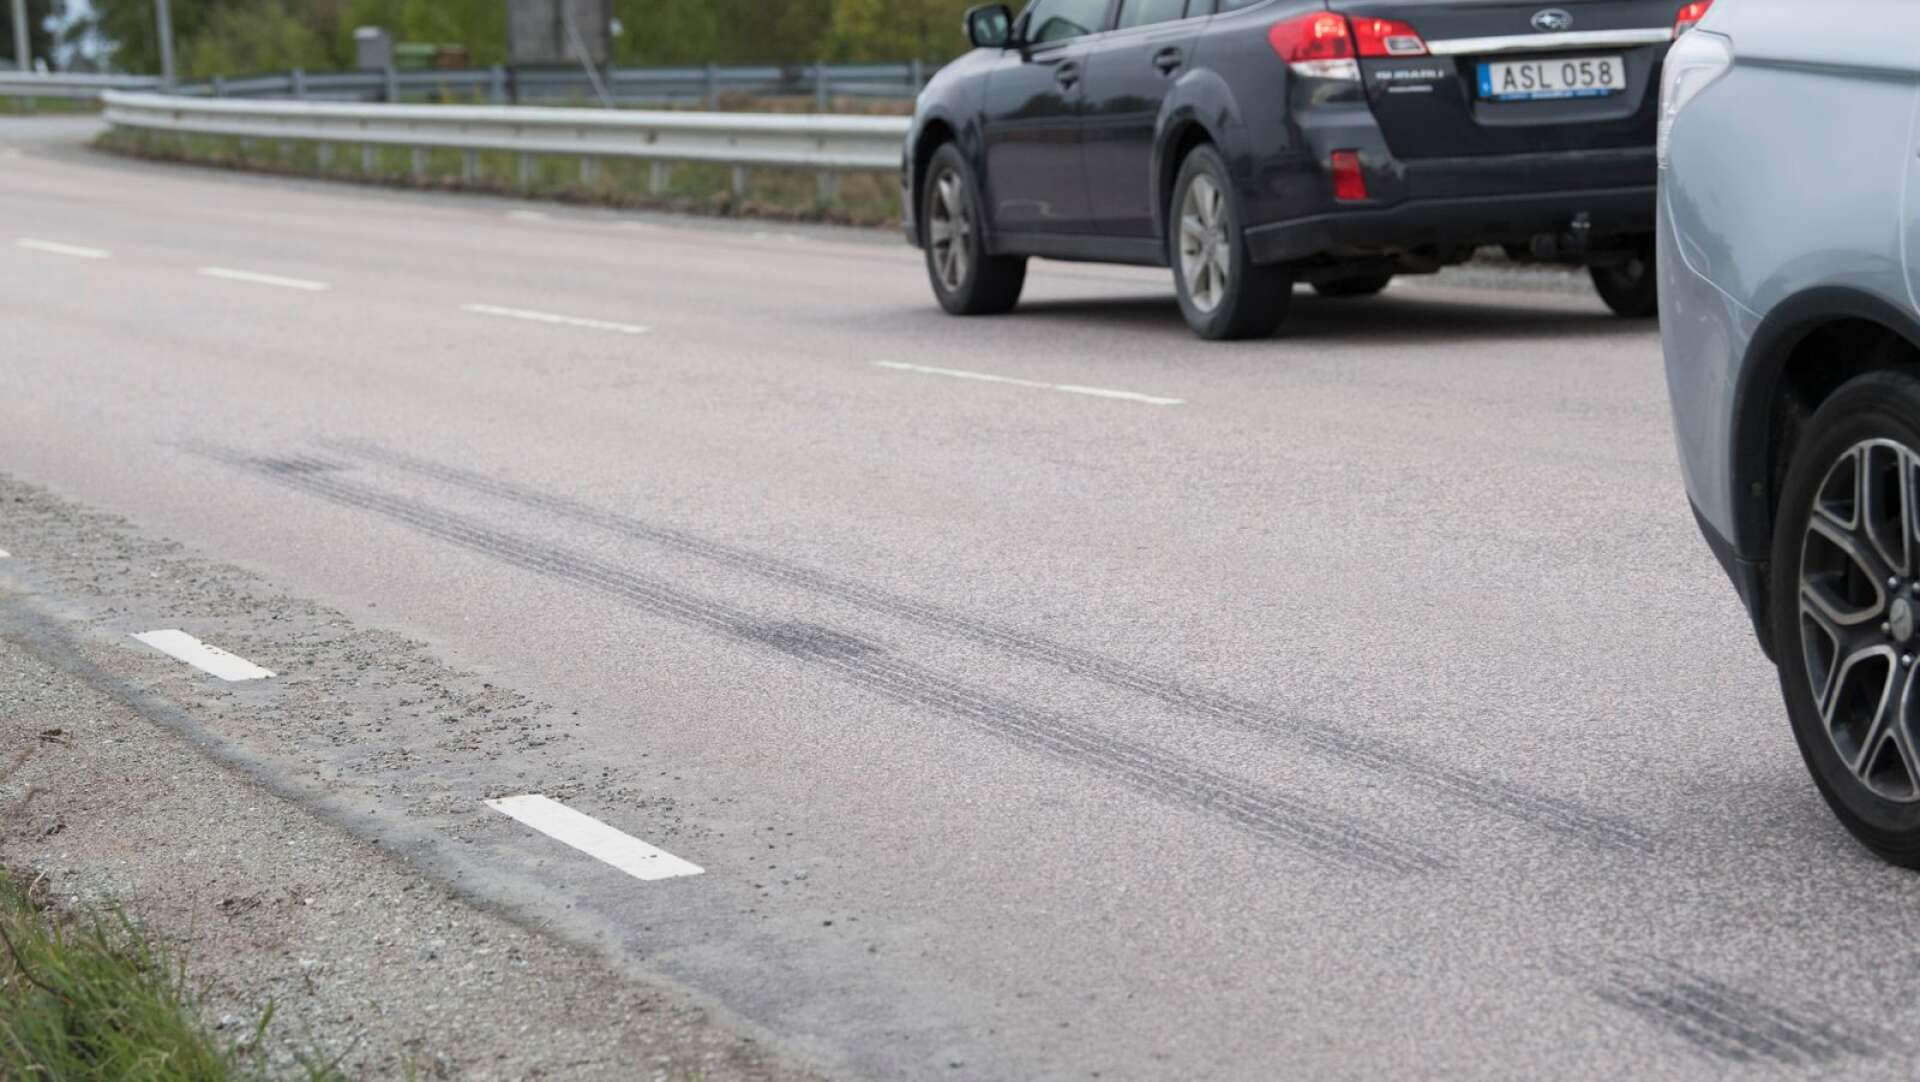 Boende längs Sandgärdesgatan i Bengtsfors klagar på höga hastigheter. 